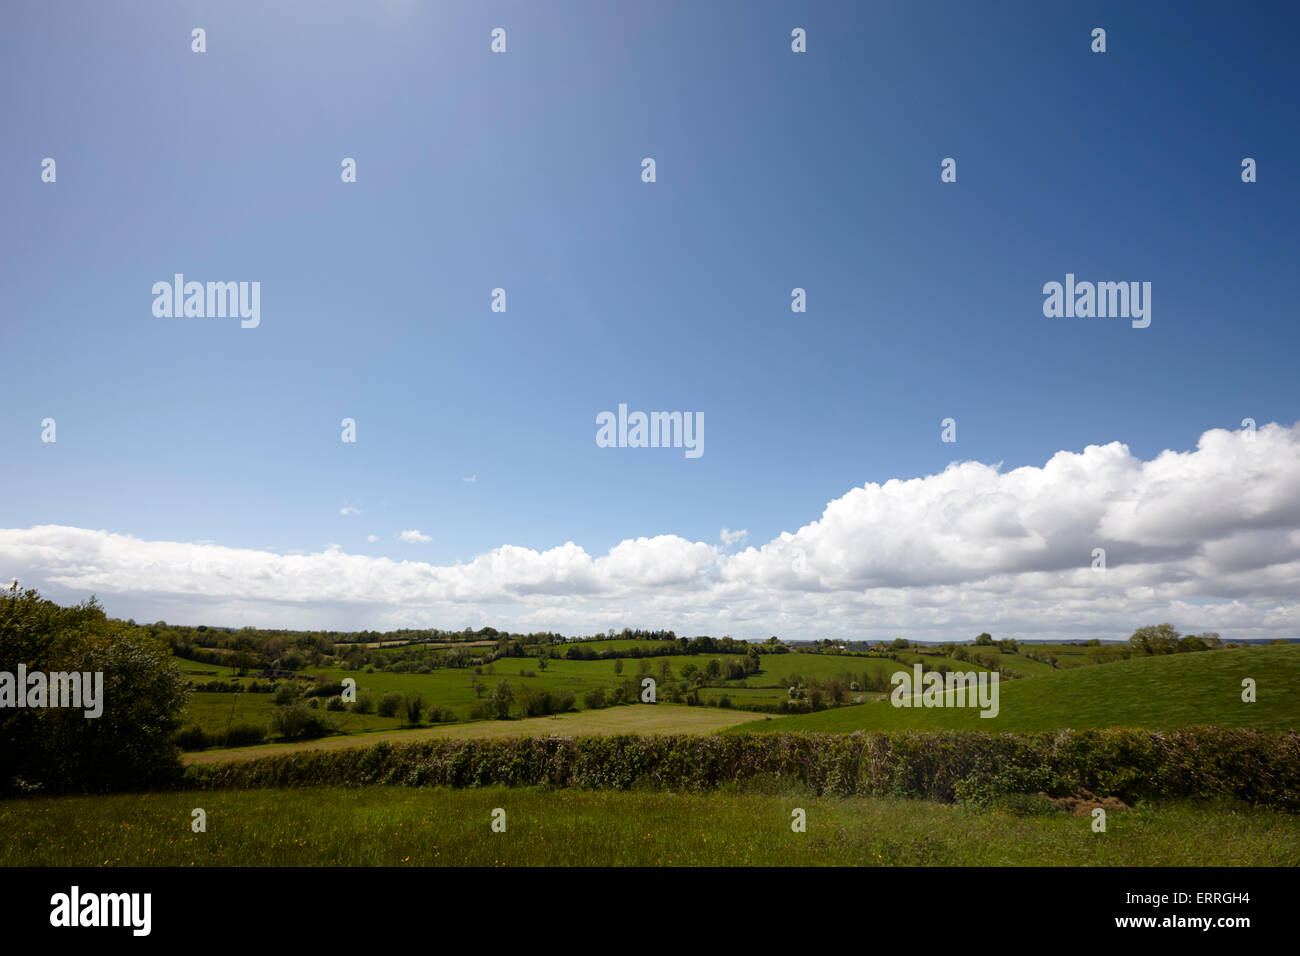 Verdes campos rurales bajo un cielo azul en la Irlanda rural tydavnet monaghan república de Irlanda Foto de stock